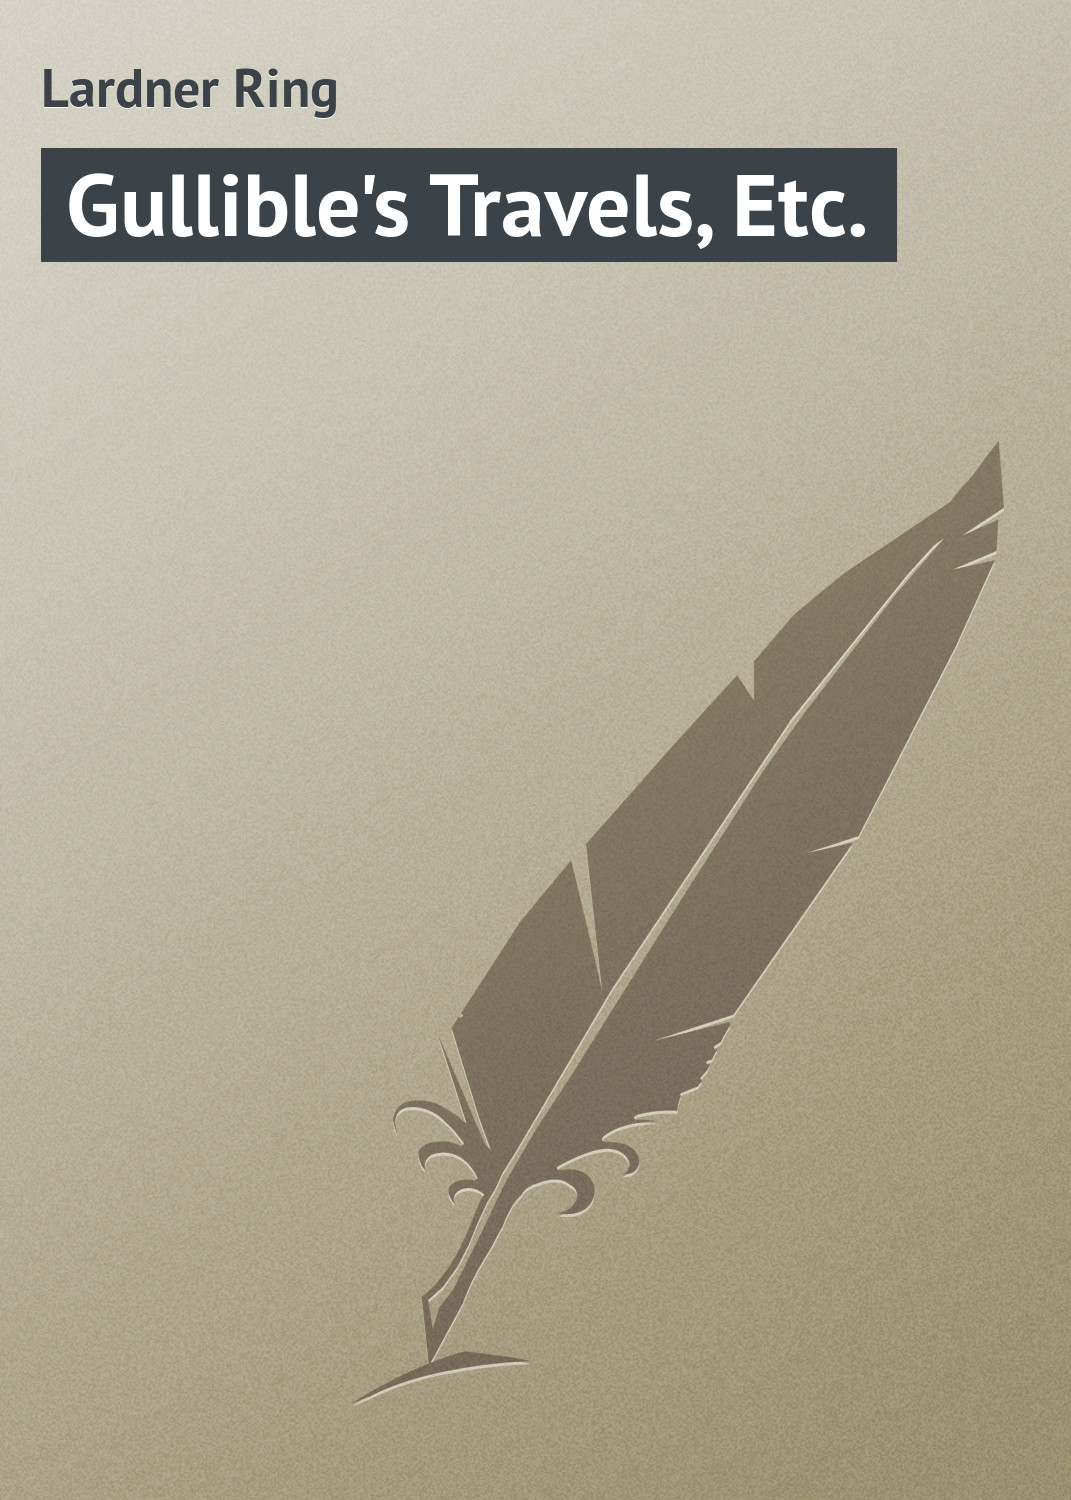 Книга Gullible's Travels, Etc. из серии , созданная Ring Lardner, может относится к жанру Зарубежная классика, Зарубежный юмор. Стоимость электронной книги Gullible's Travels, Etc. с идентификатором 23166027 составляет 5.99 руб.